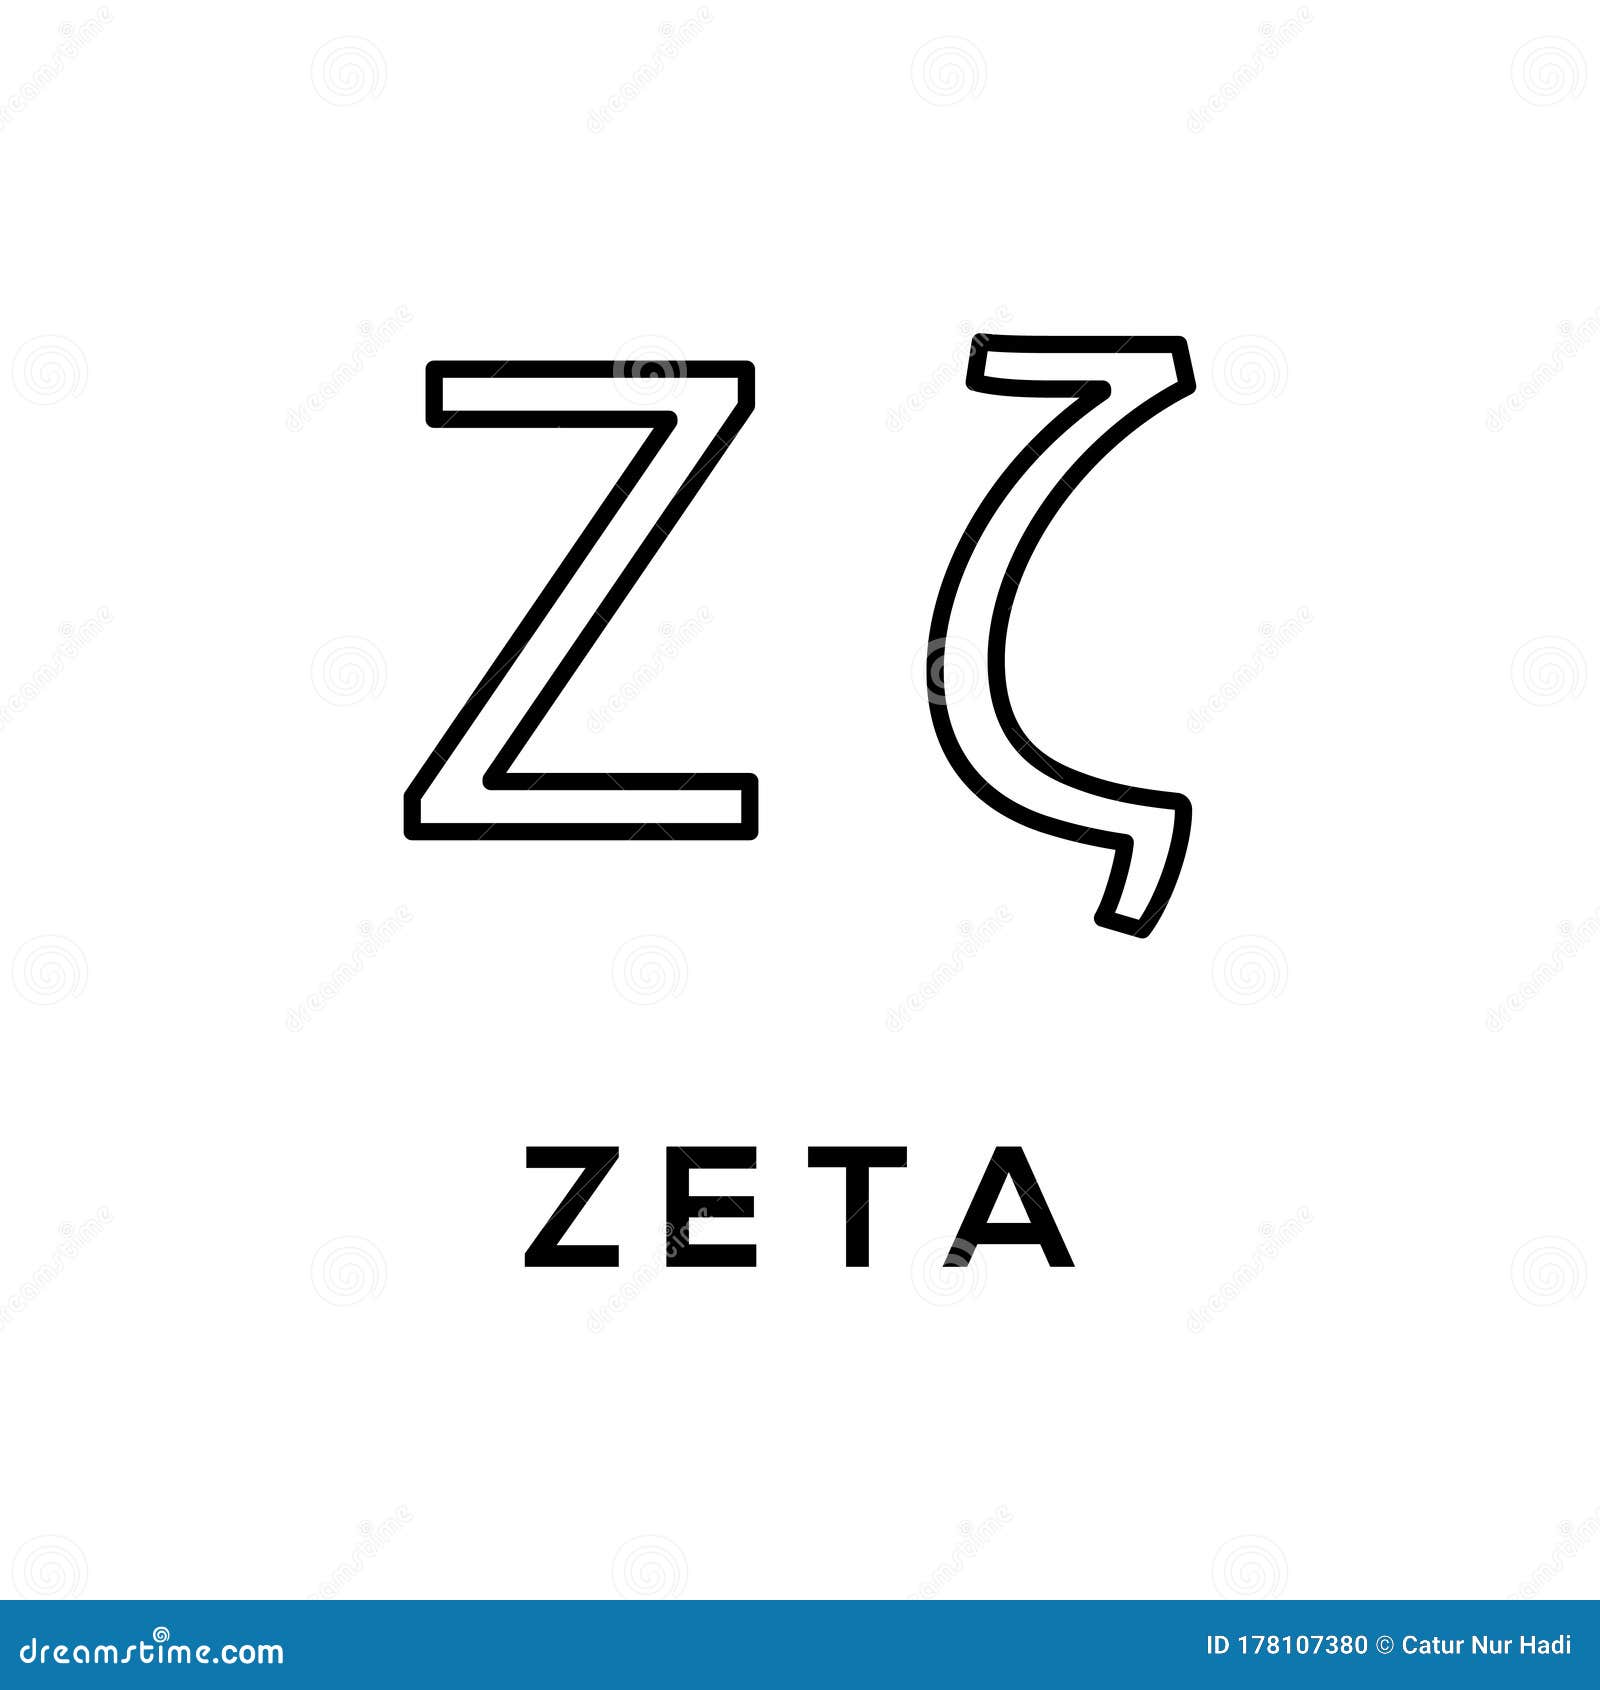 Zeta 